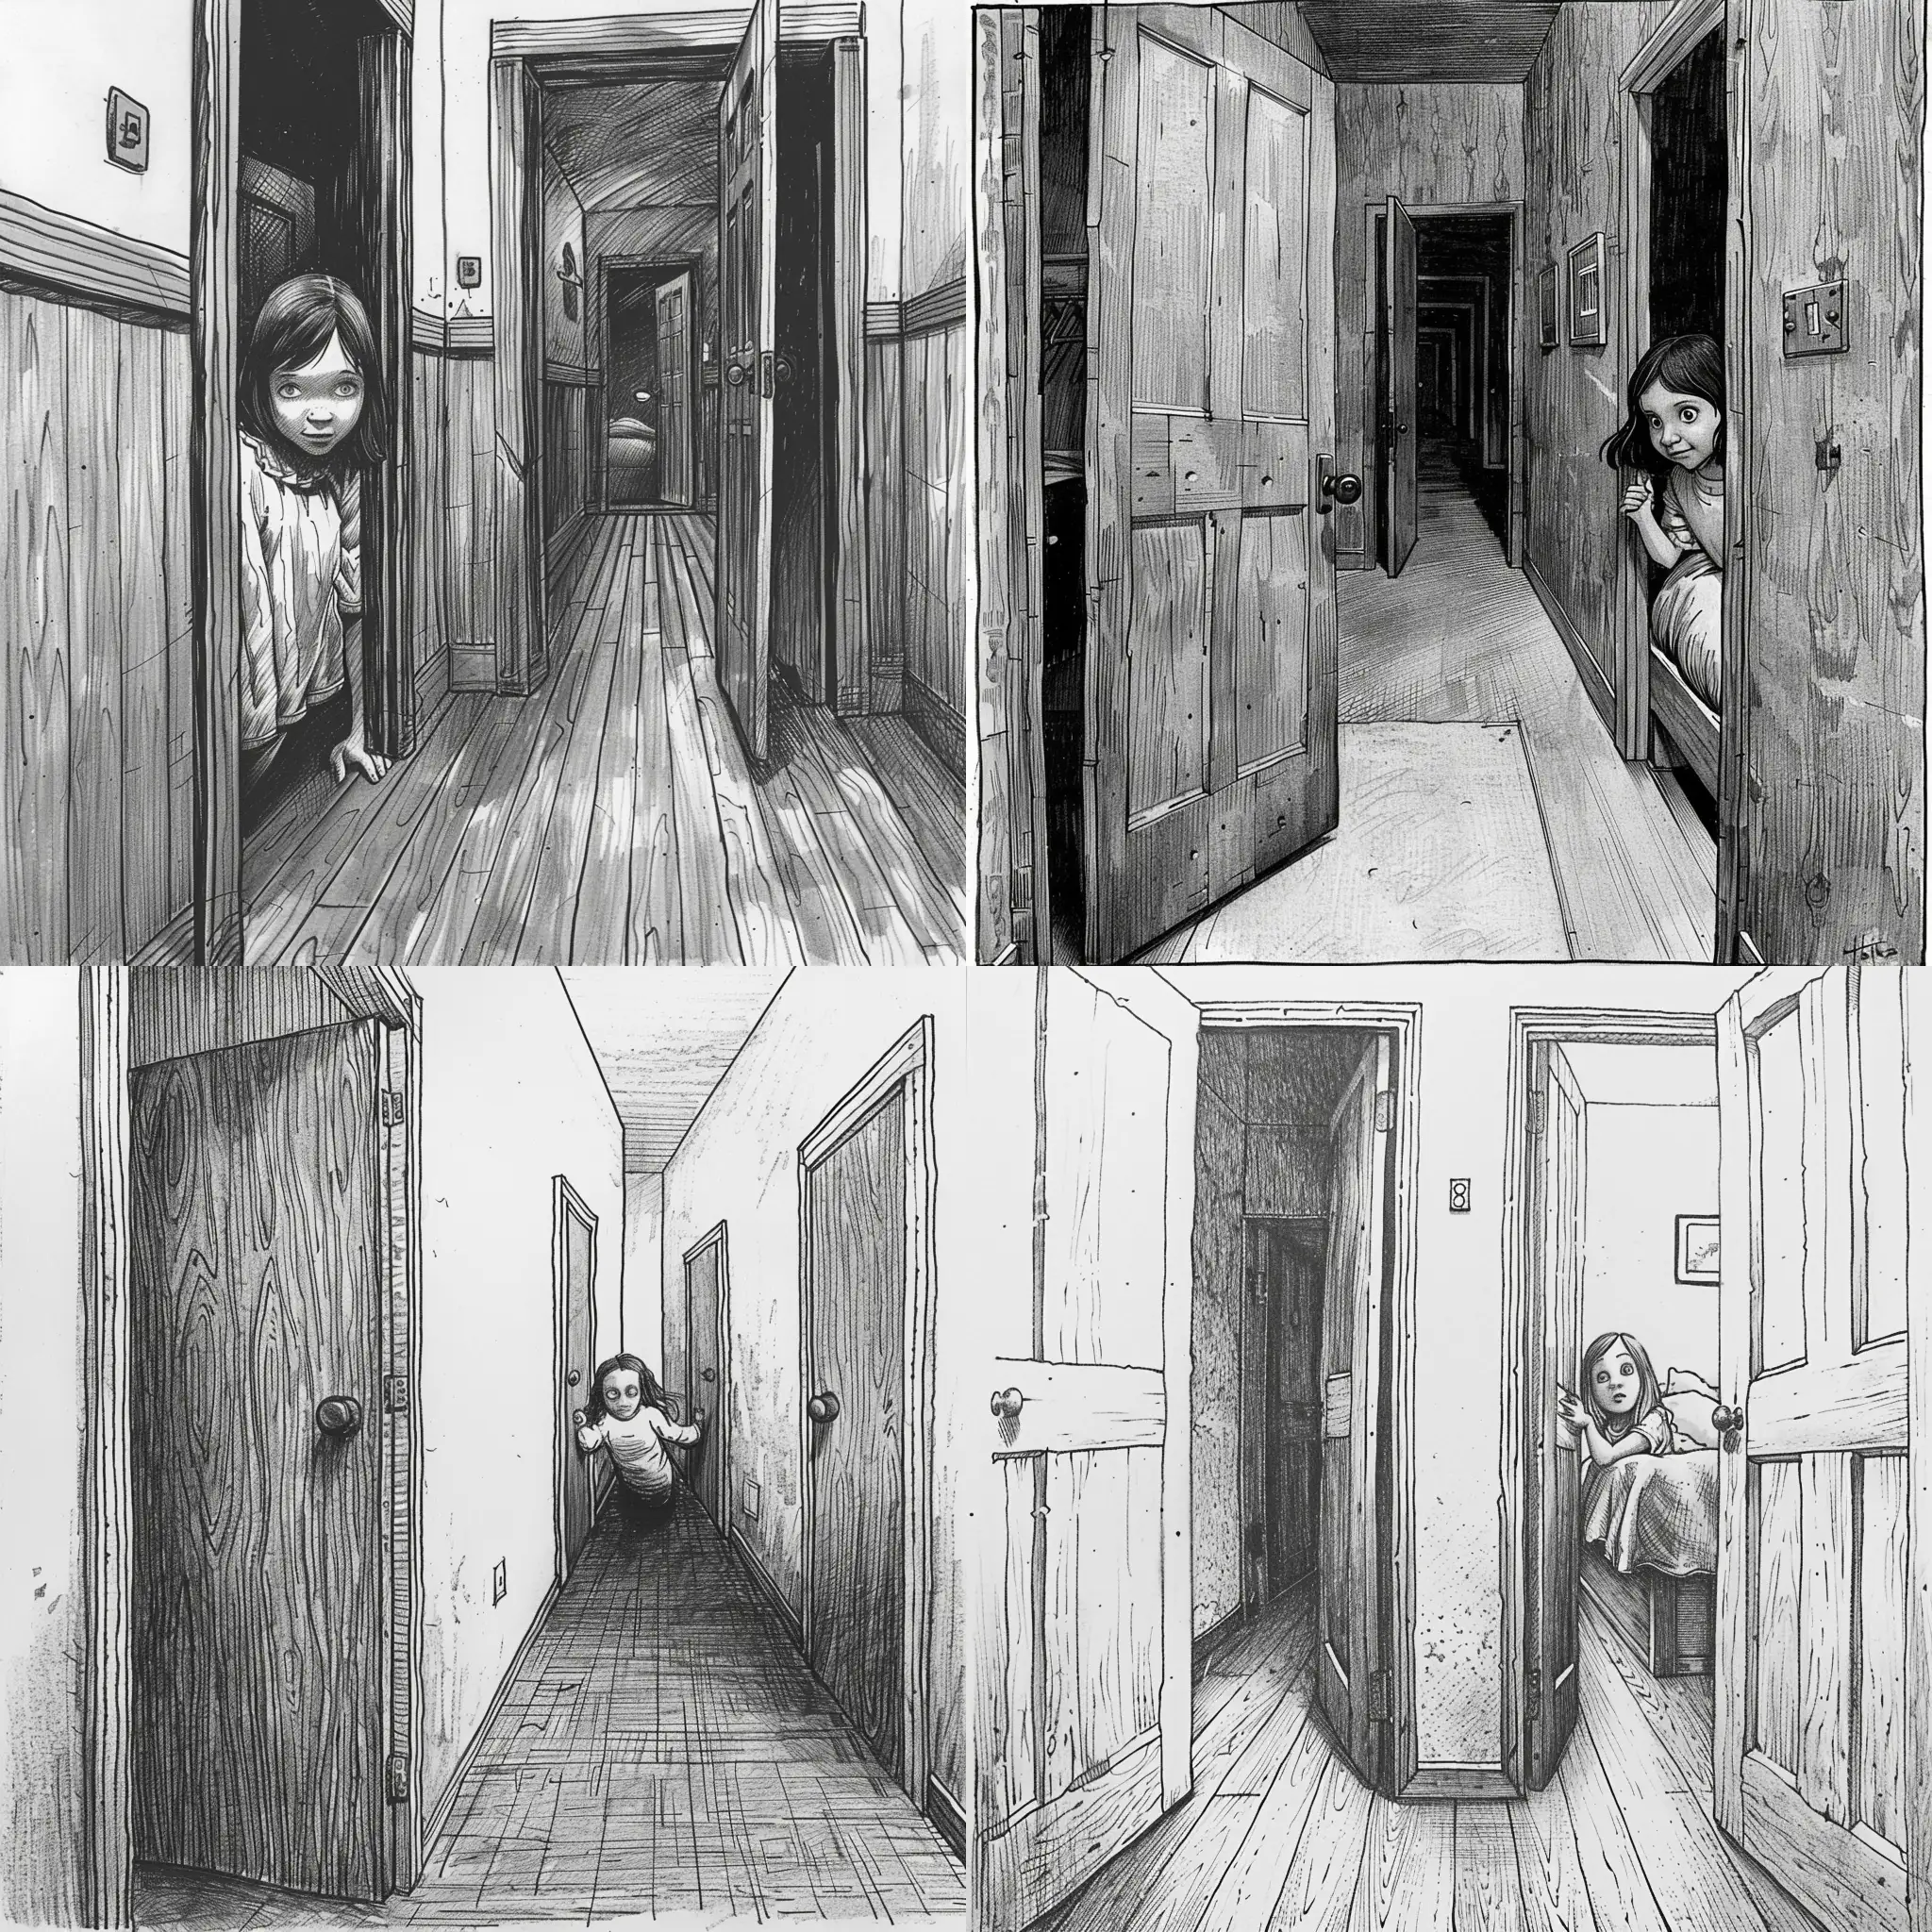 Young-Girl-Peeking-in-Creepy-Passageway-Sketch